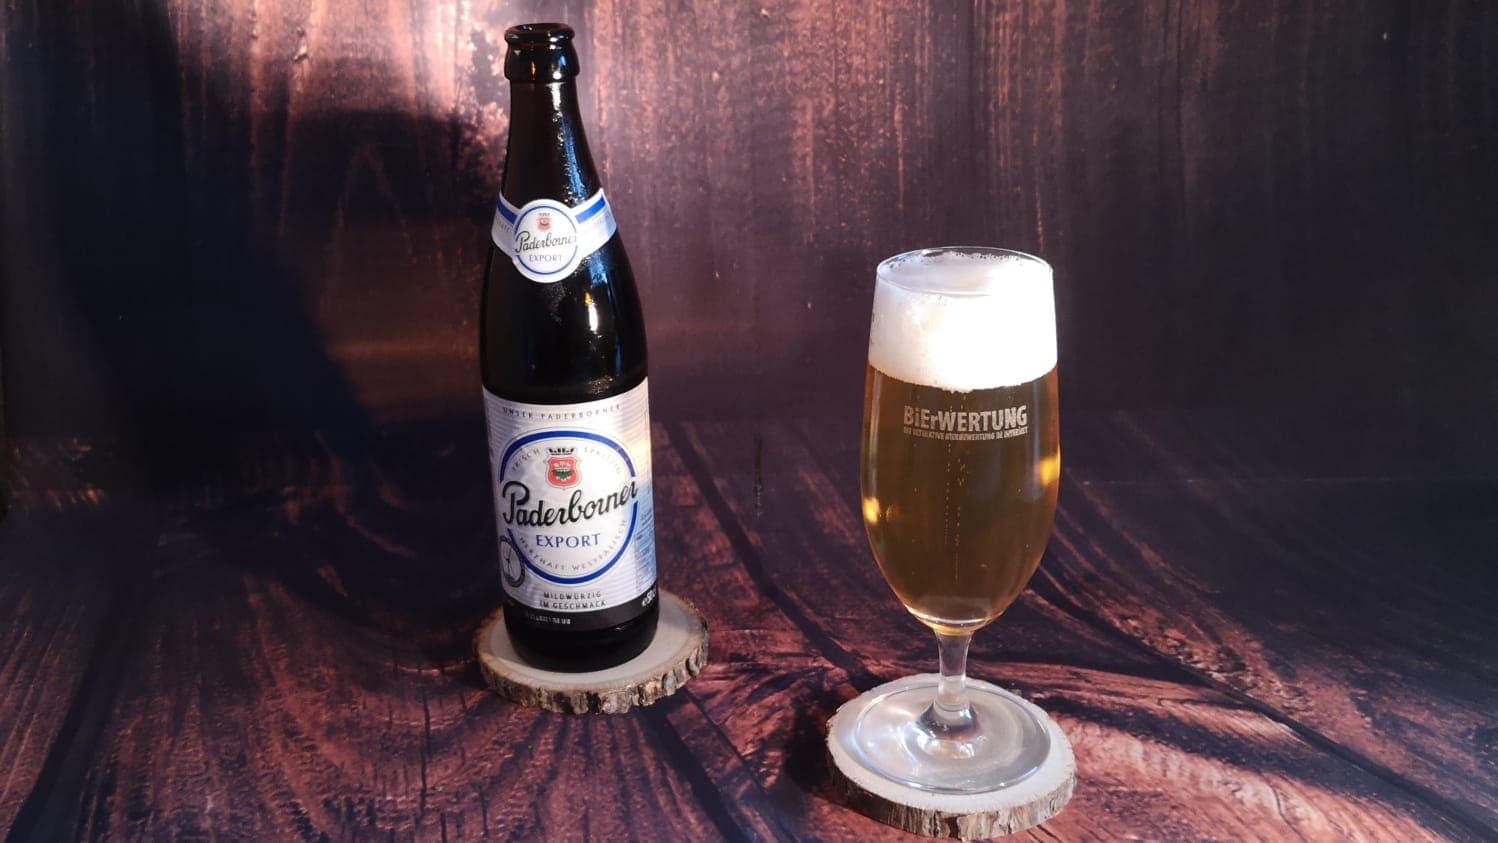 Paderborner Export Bierwertung test Bewertung